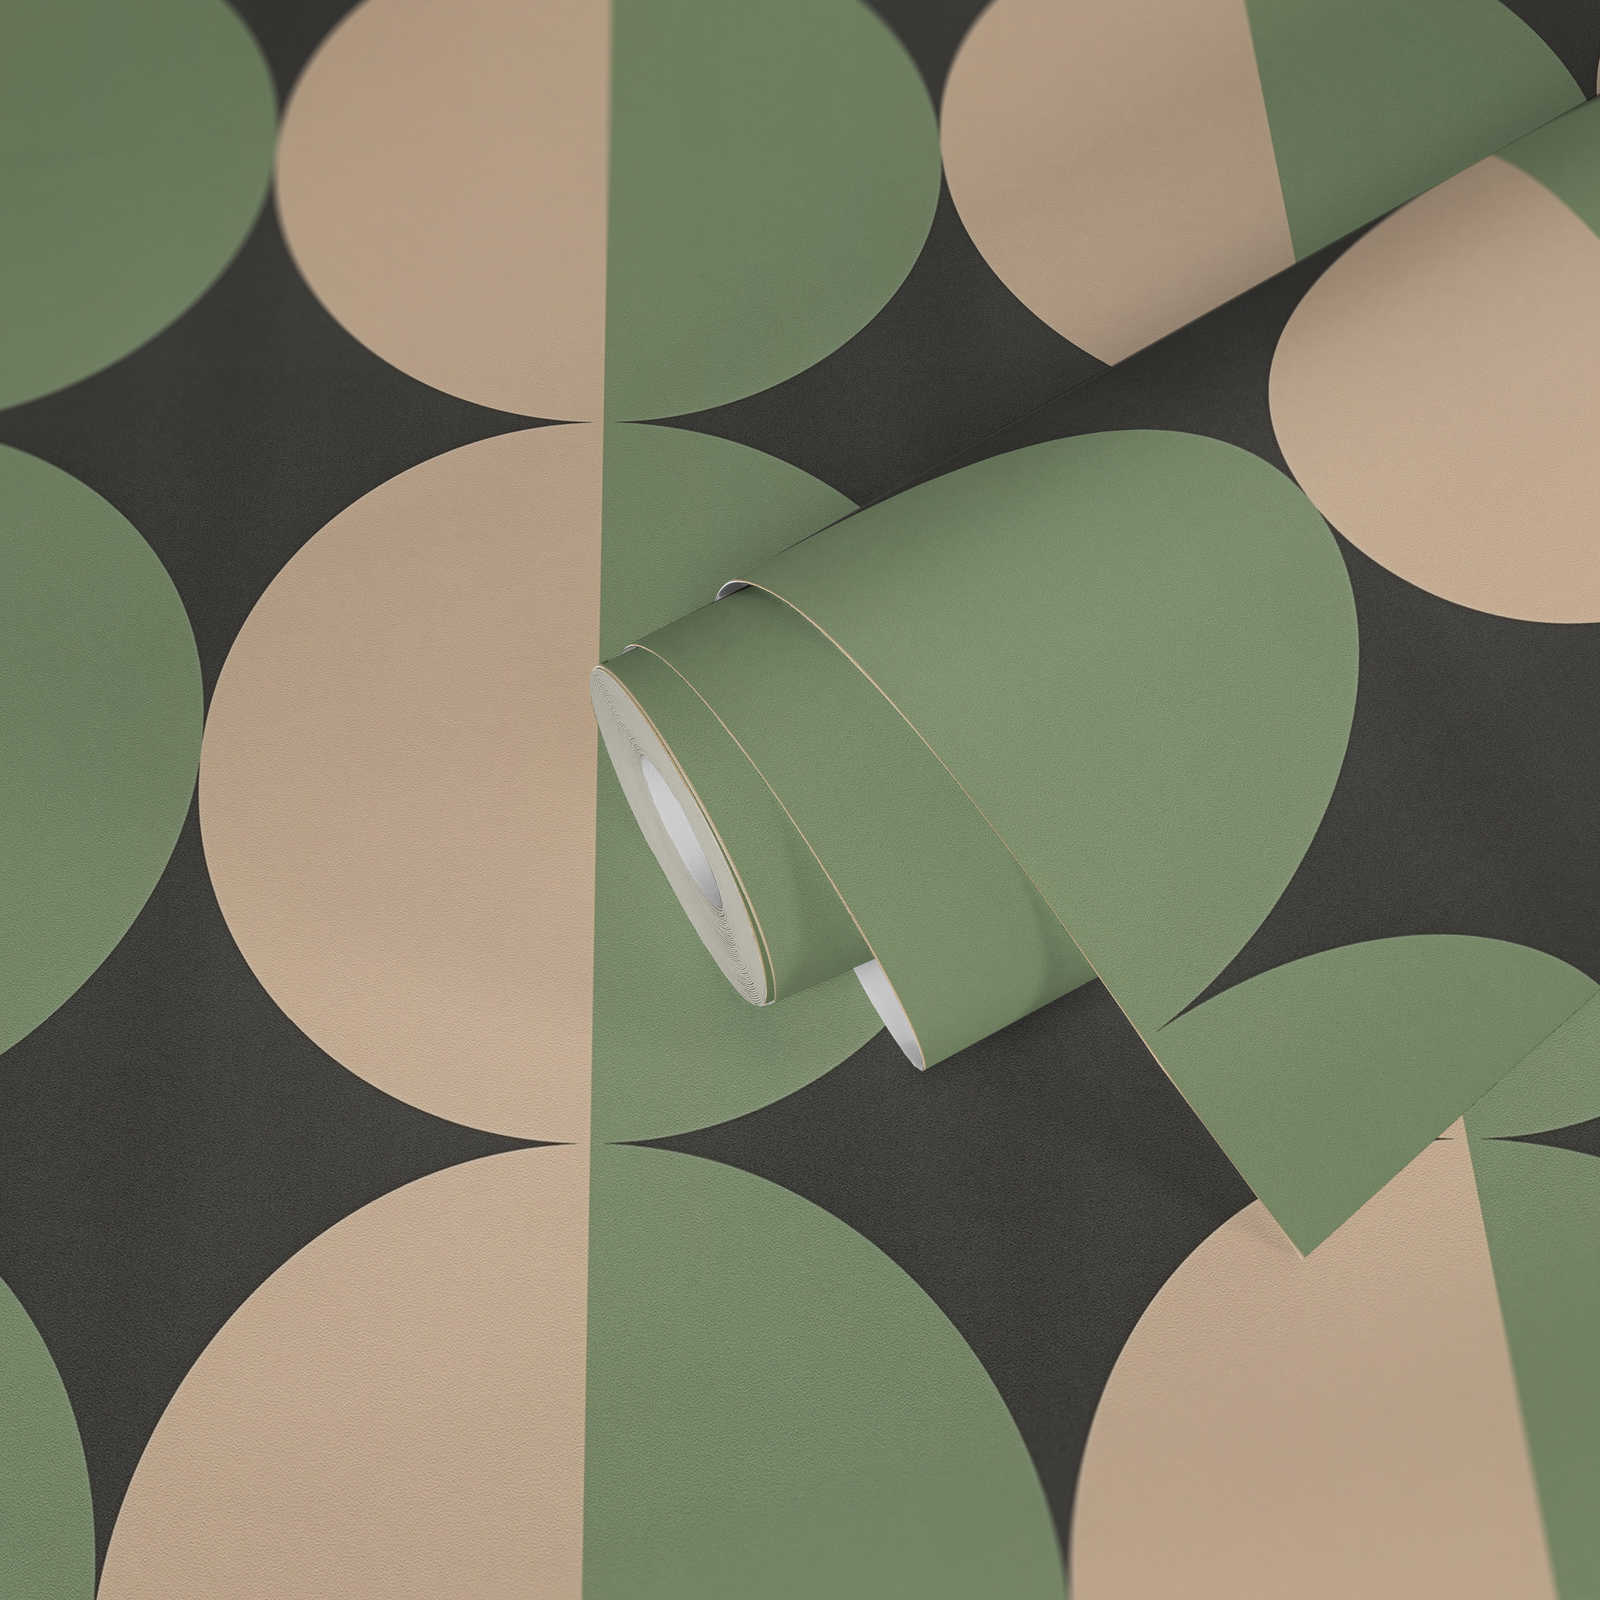             Carta da parati in tessuto non tessuto con motivi grafici a cerchio retro - verde, beige, nero
        